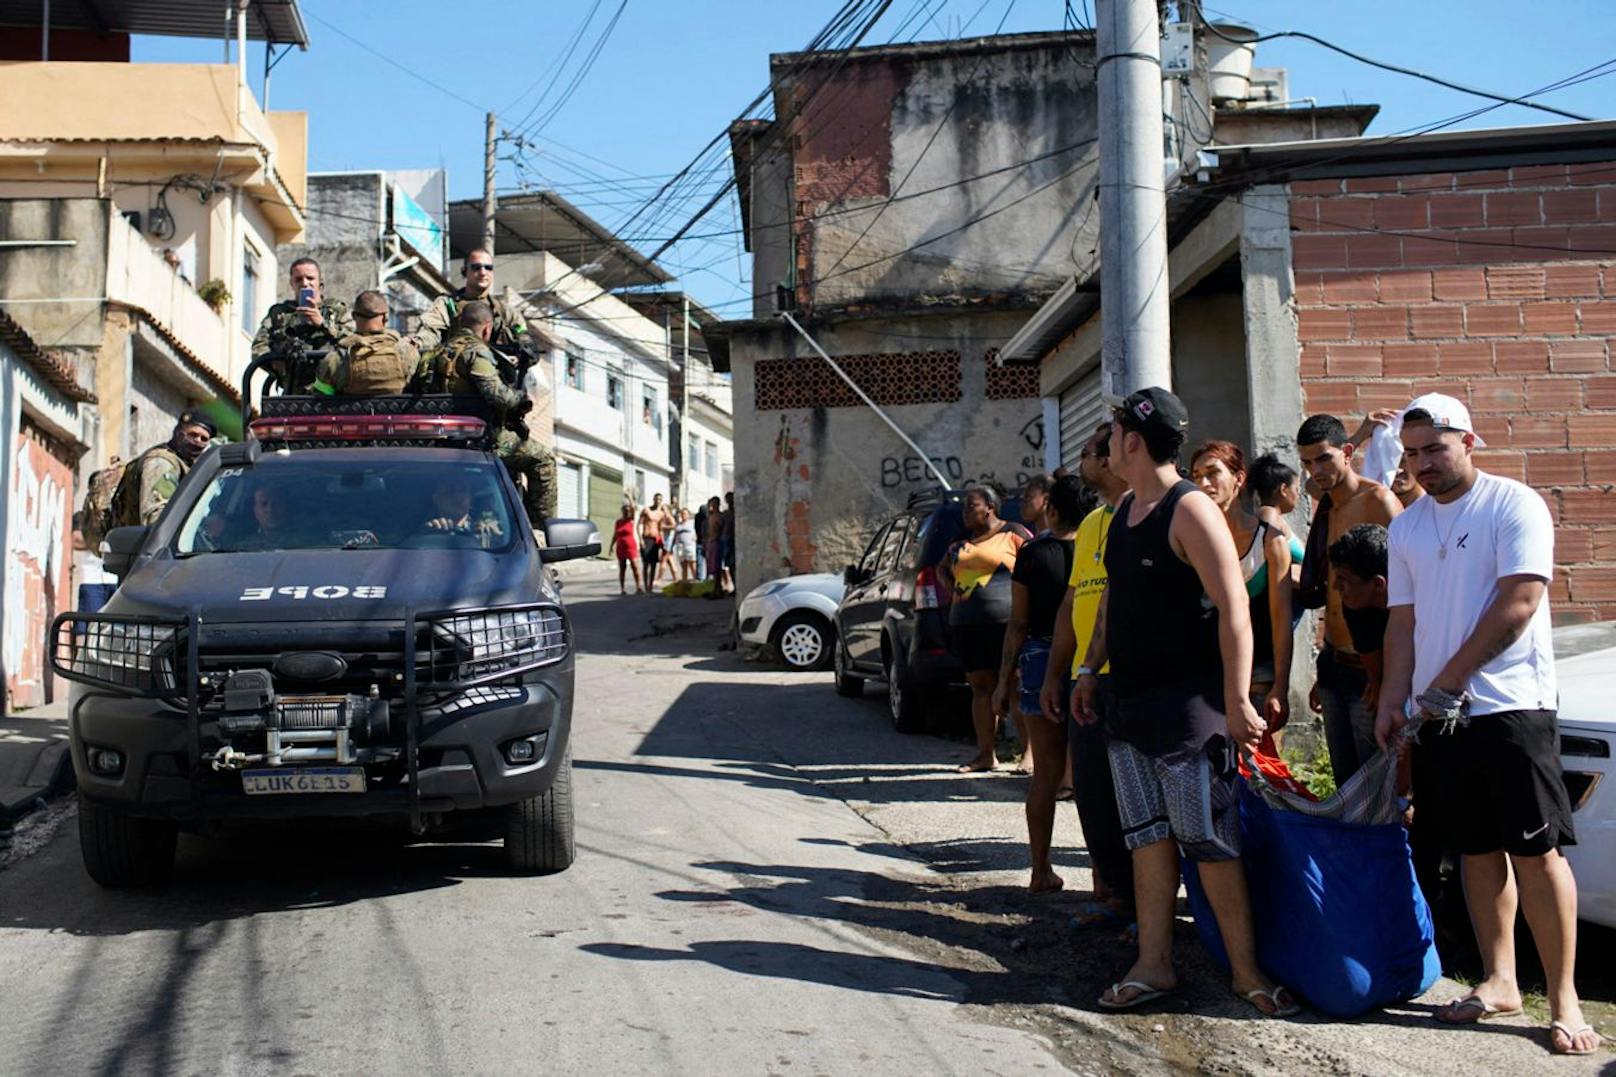 Erneut sind bei einer Razzia in einer von Rios Favelas unzählige Menschen getötet worden. 